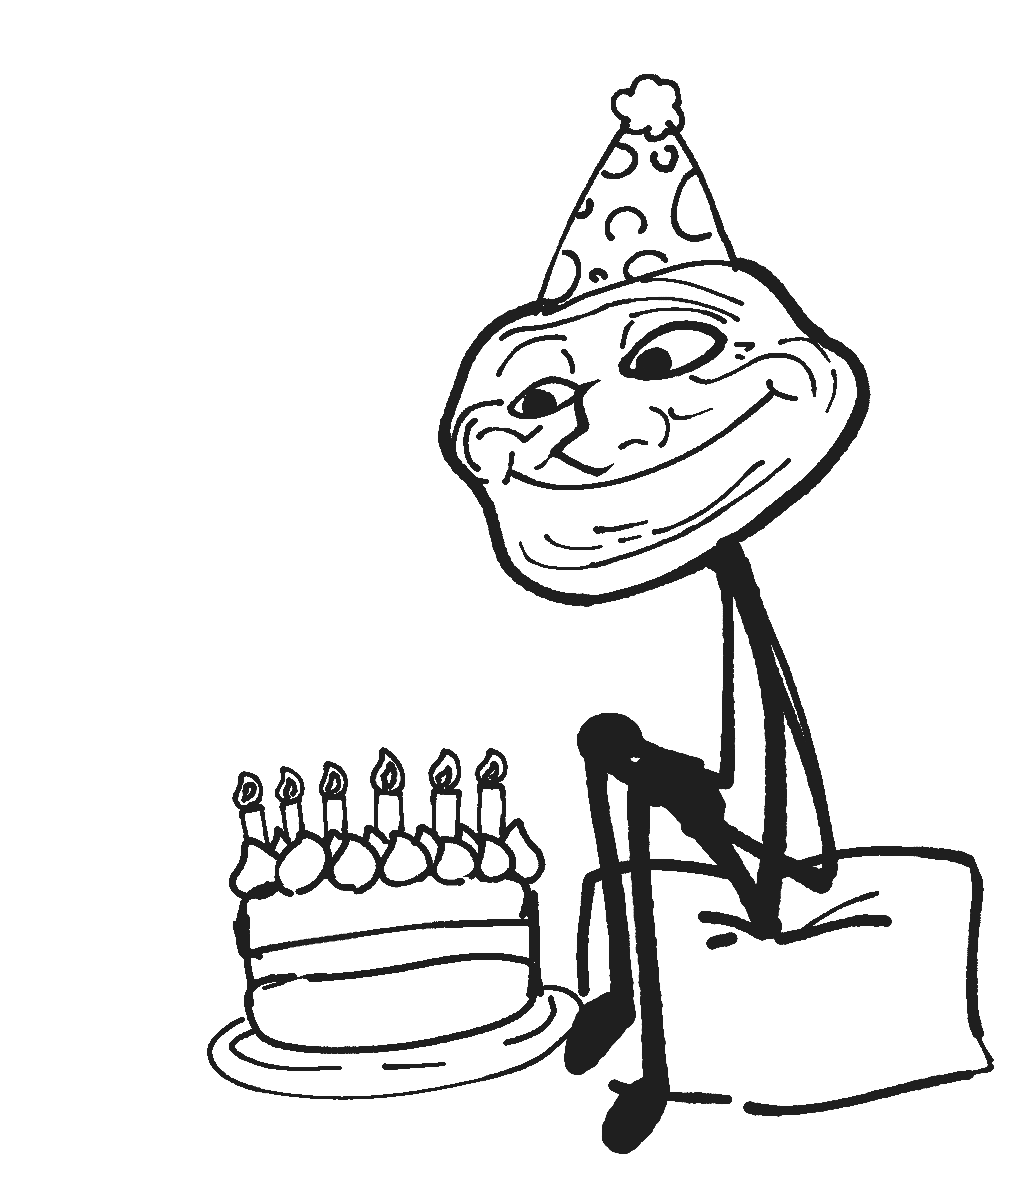 99 hình ảnh chúc mừng sinh nhật cực kỳ hài hước vui nhộn cho bạn  Party  Vui